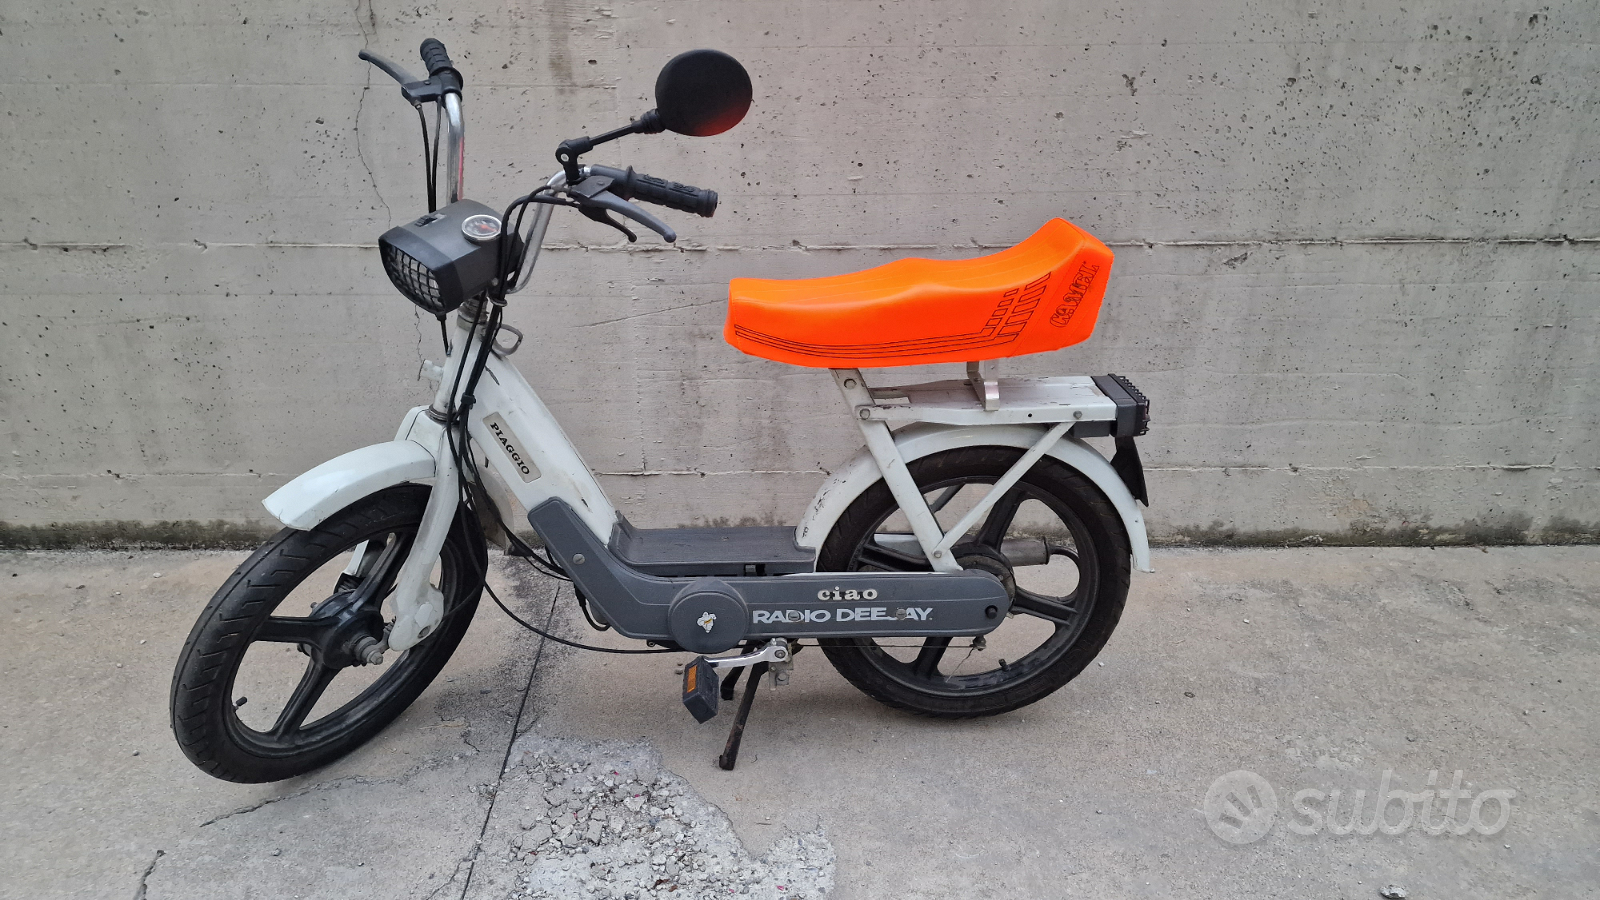 Ciao piaggio - Moto e Scooter In vendita a Brescia